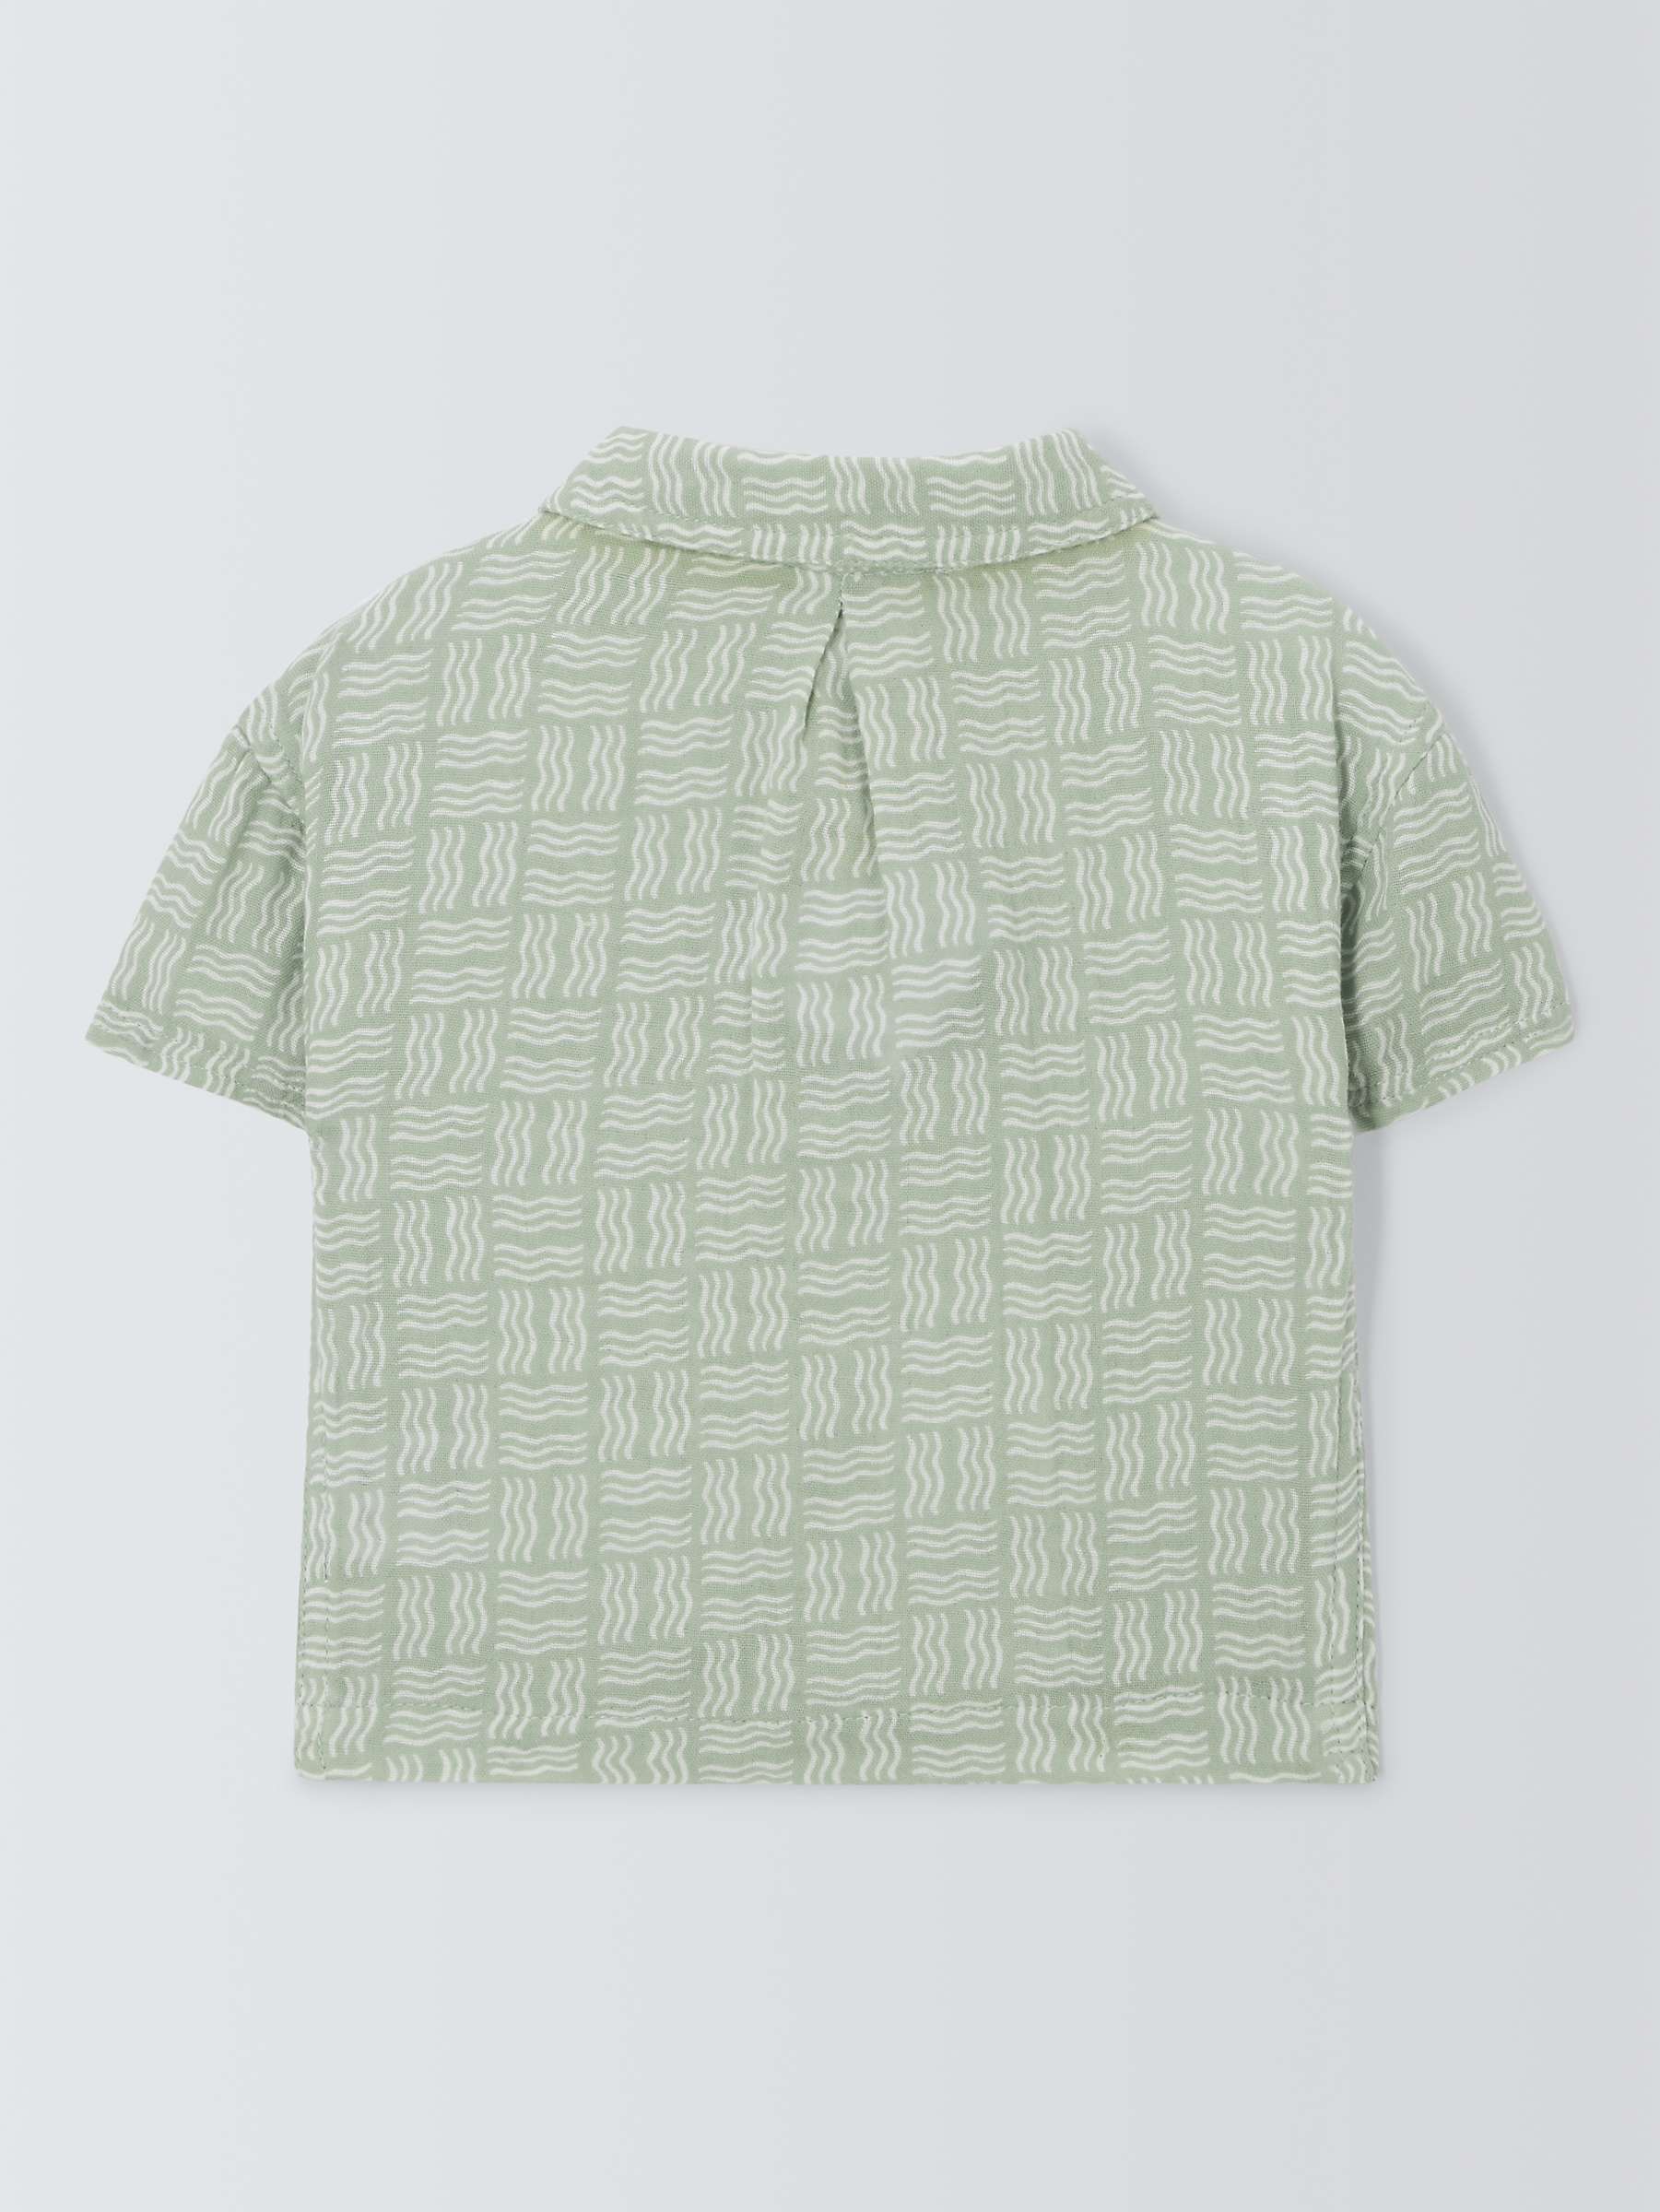 Buy John Lewis Baby Cotton Muslin Printed Shirt, Green Online at johnlewis.com